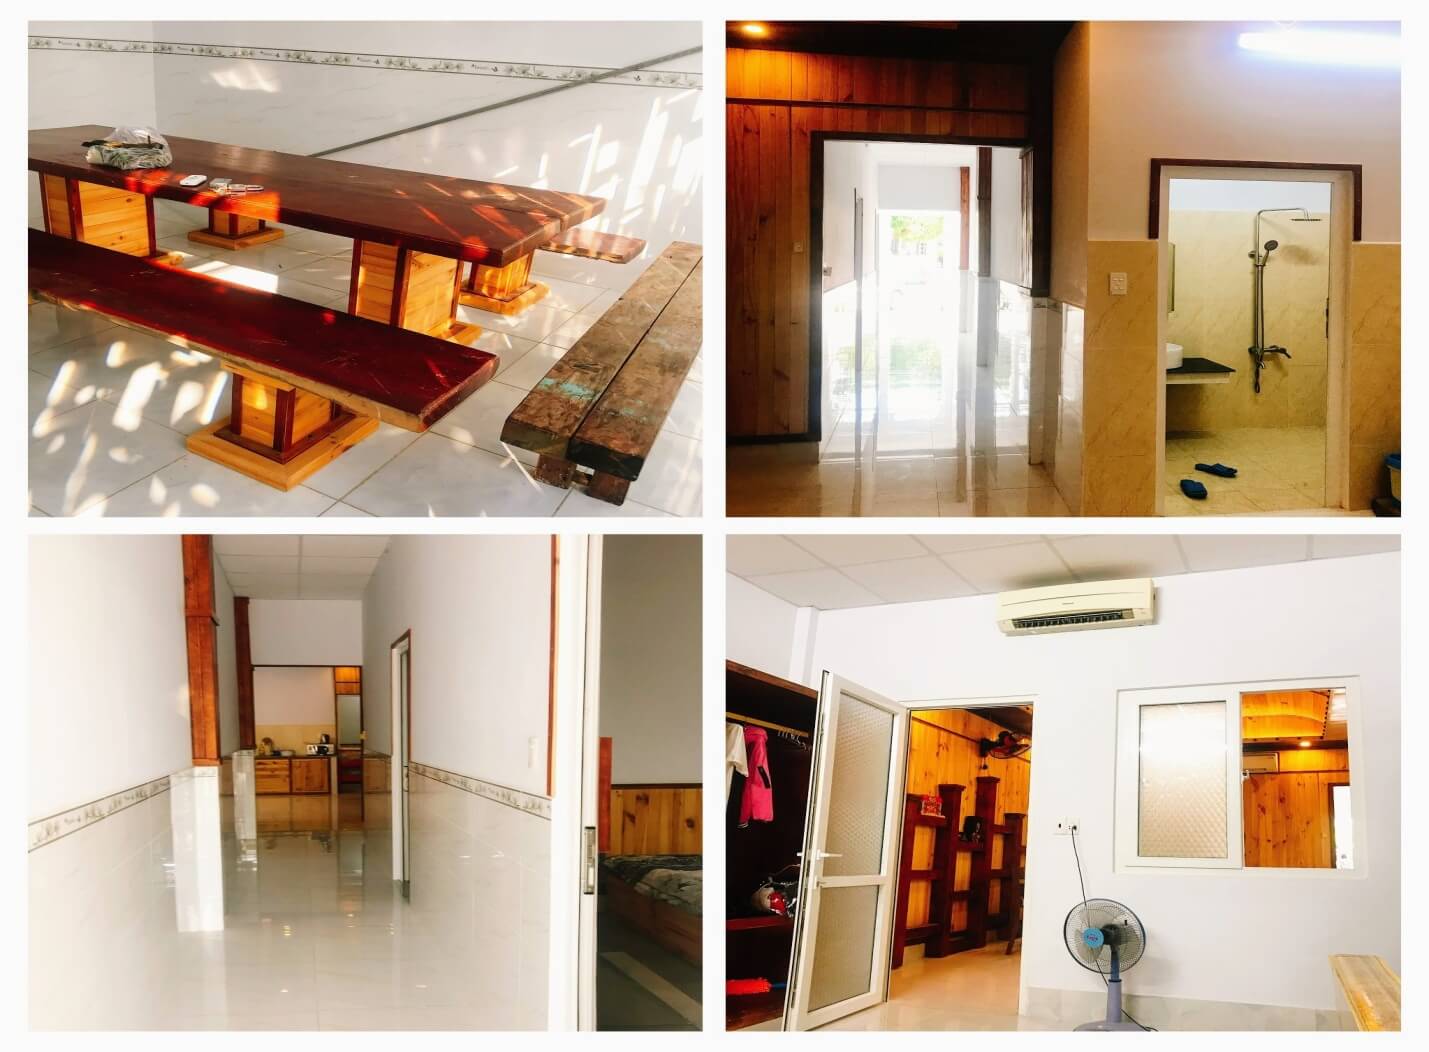 “Nơi nghỉ dưỡng vượt mong đợi” với căn hộ thủy tiên’s house ở Vũng Tàu